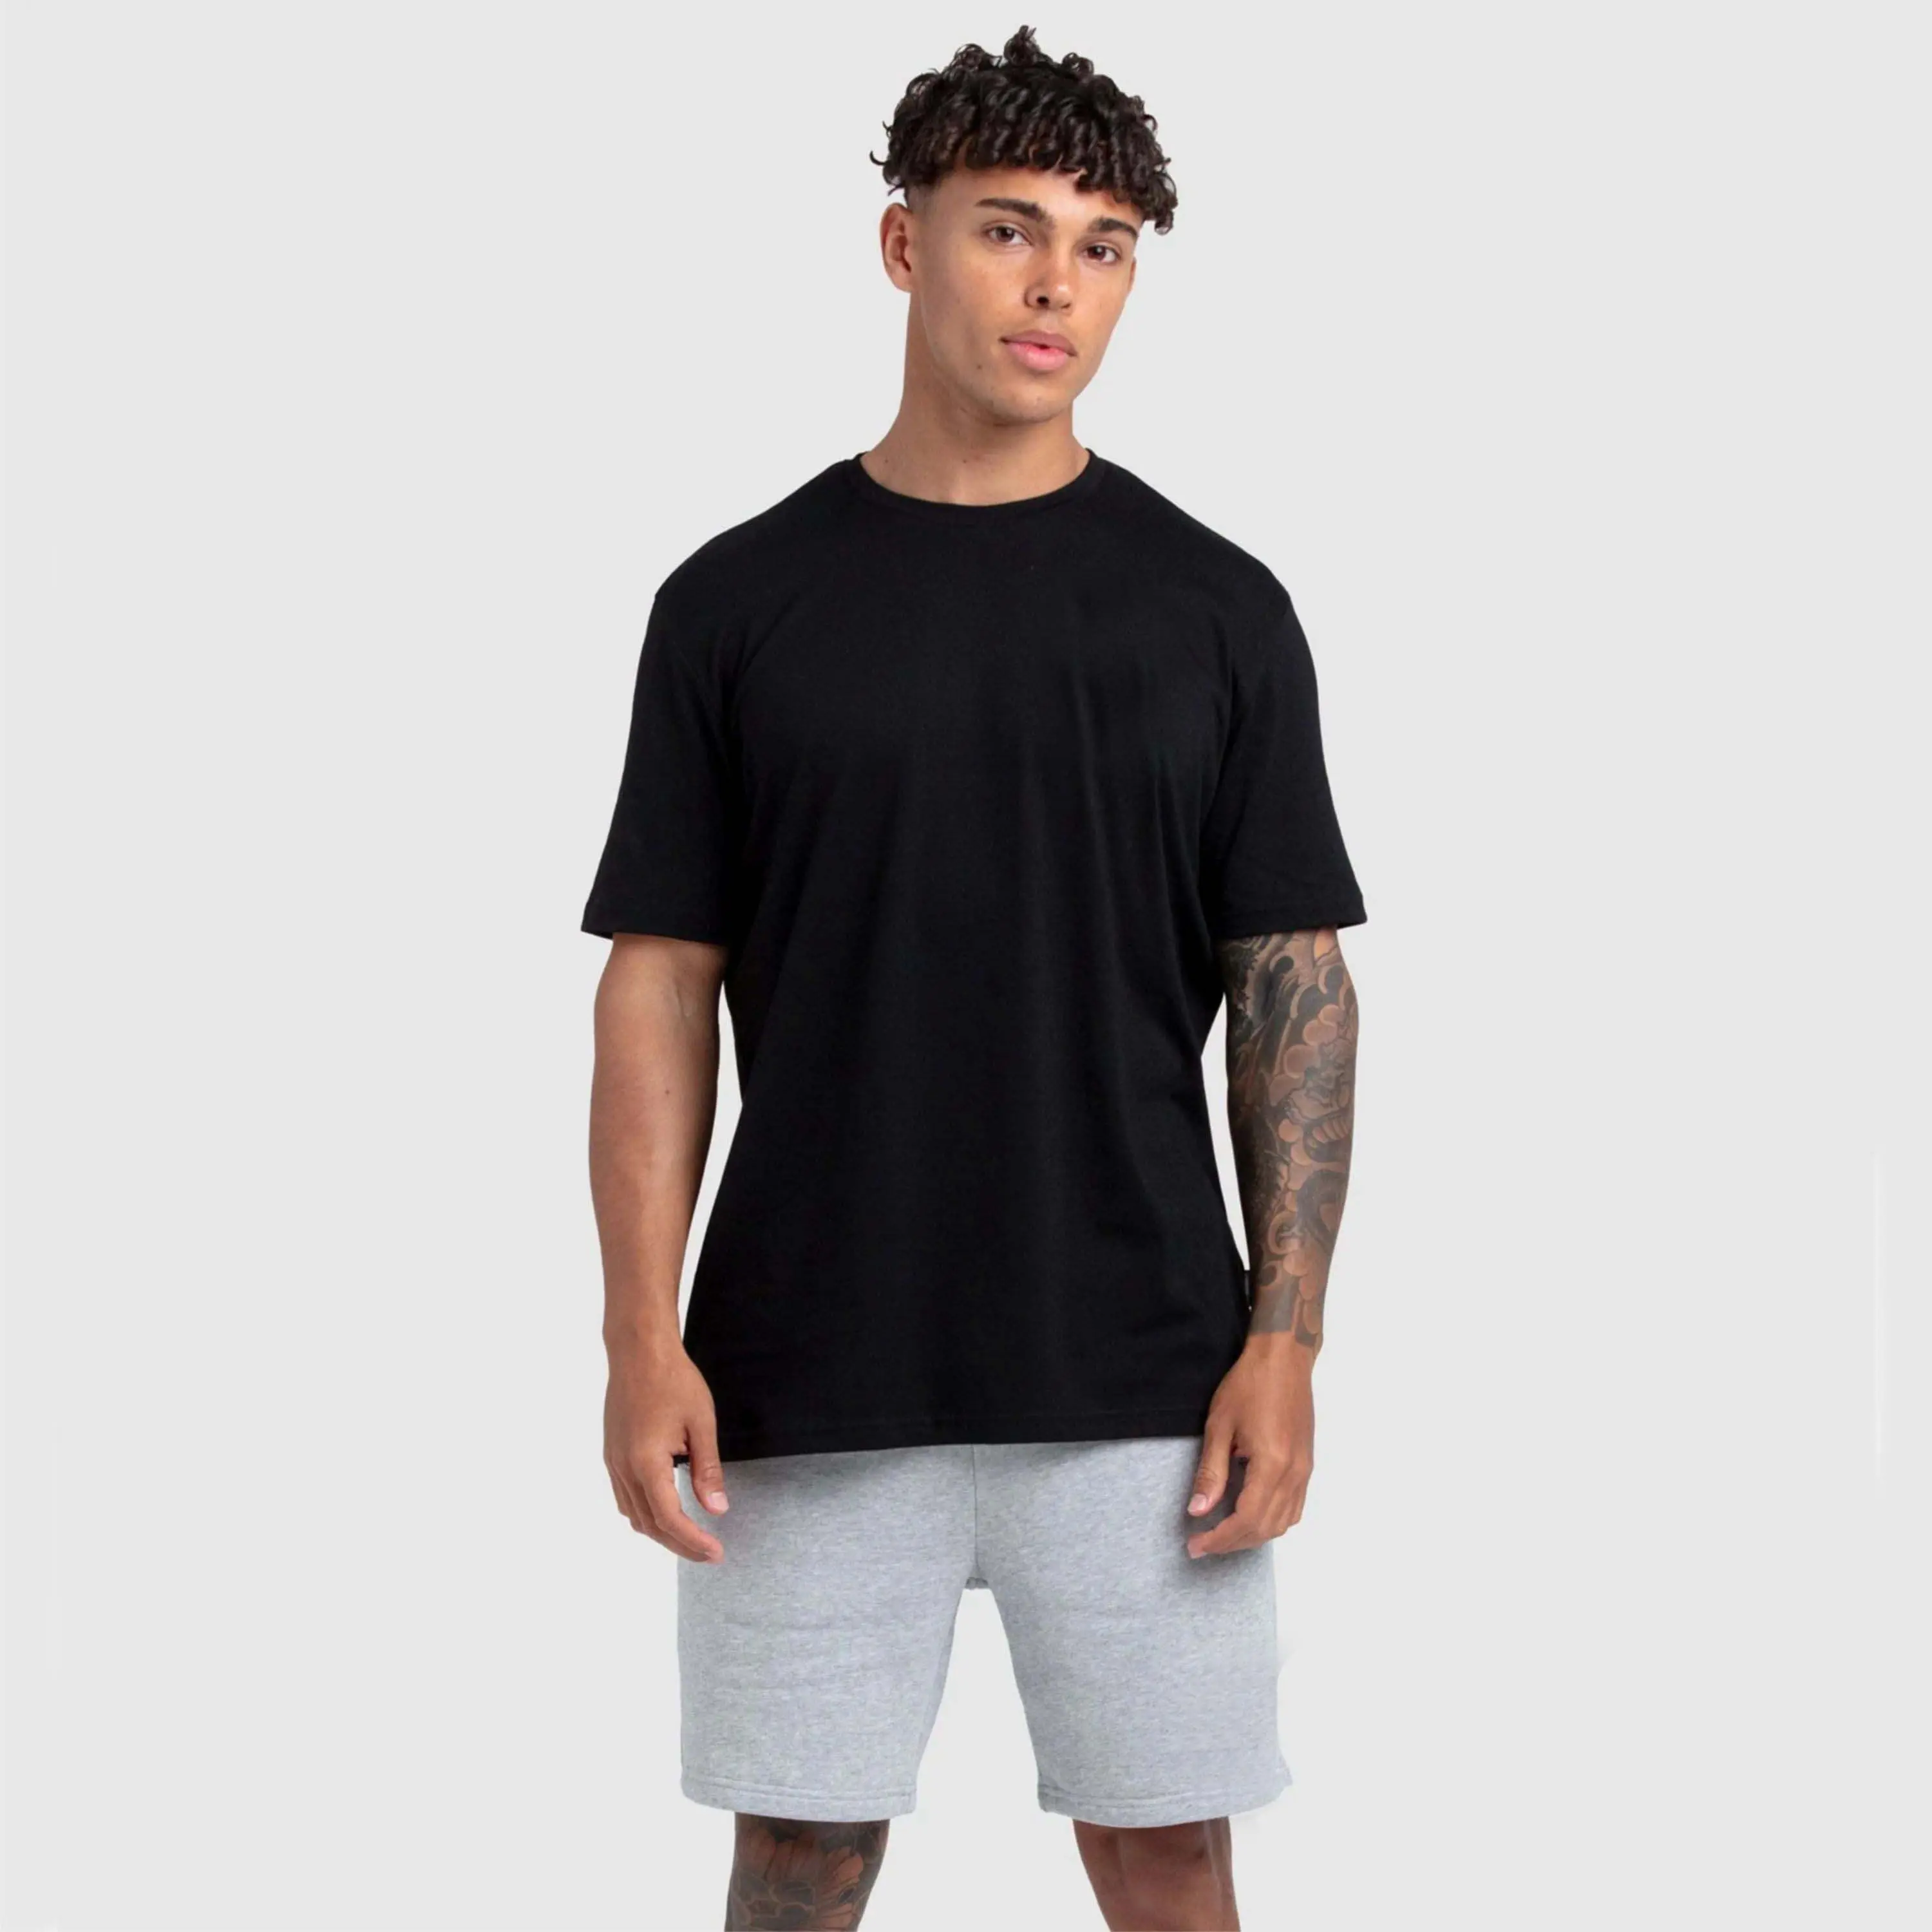 Premium Qualität Herren 100 % Baumwolle schwarze Farbe Basic Regular Fit T-Shirt zu verkaufen Herren individuelle T-Shirts Herren einfache T-Shirts